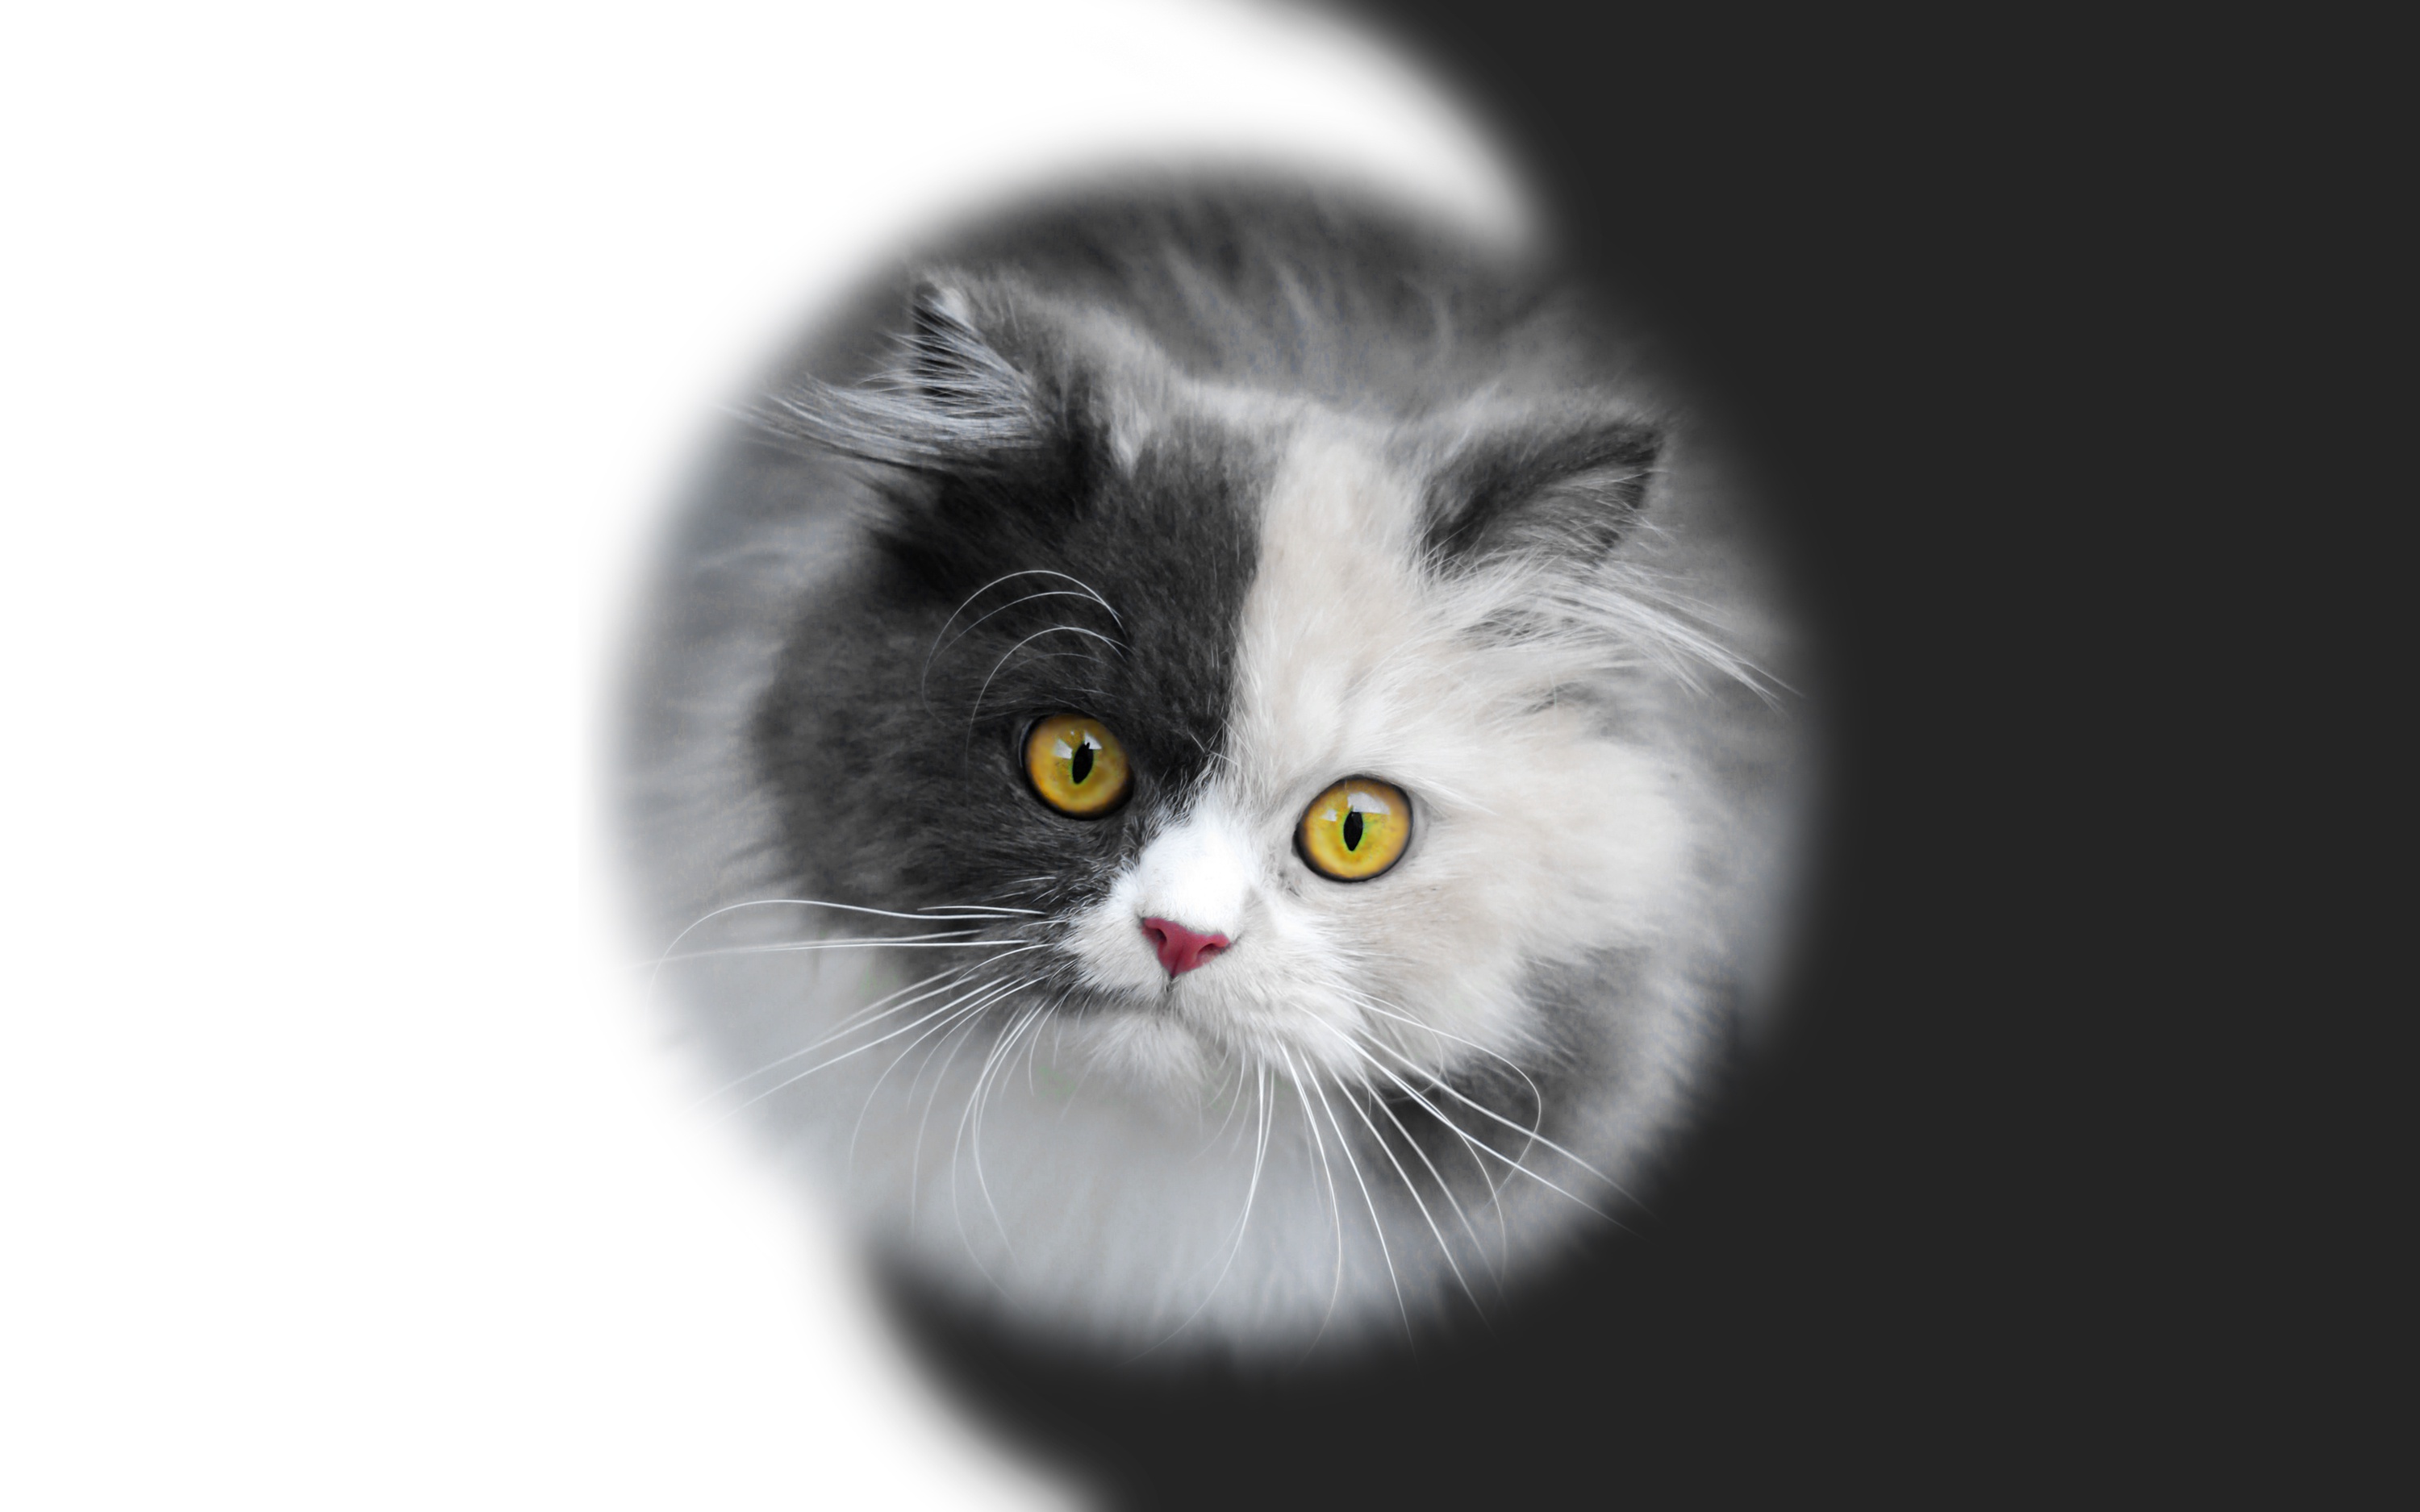 Descarga gratuita de fondo de pantalla para móvil de Animales, Gatos, Gato, Mirar Fijamente.